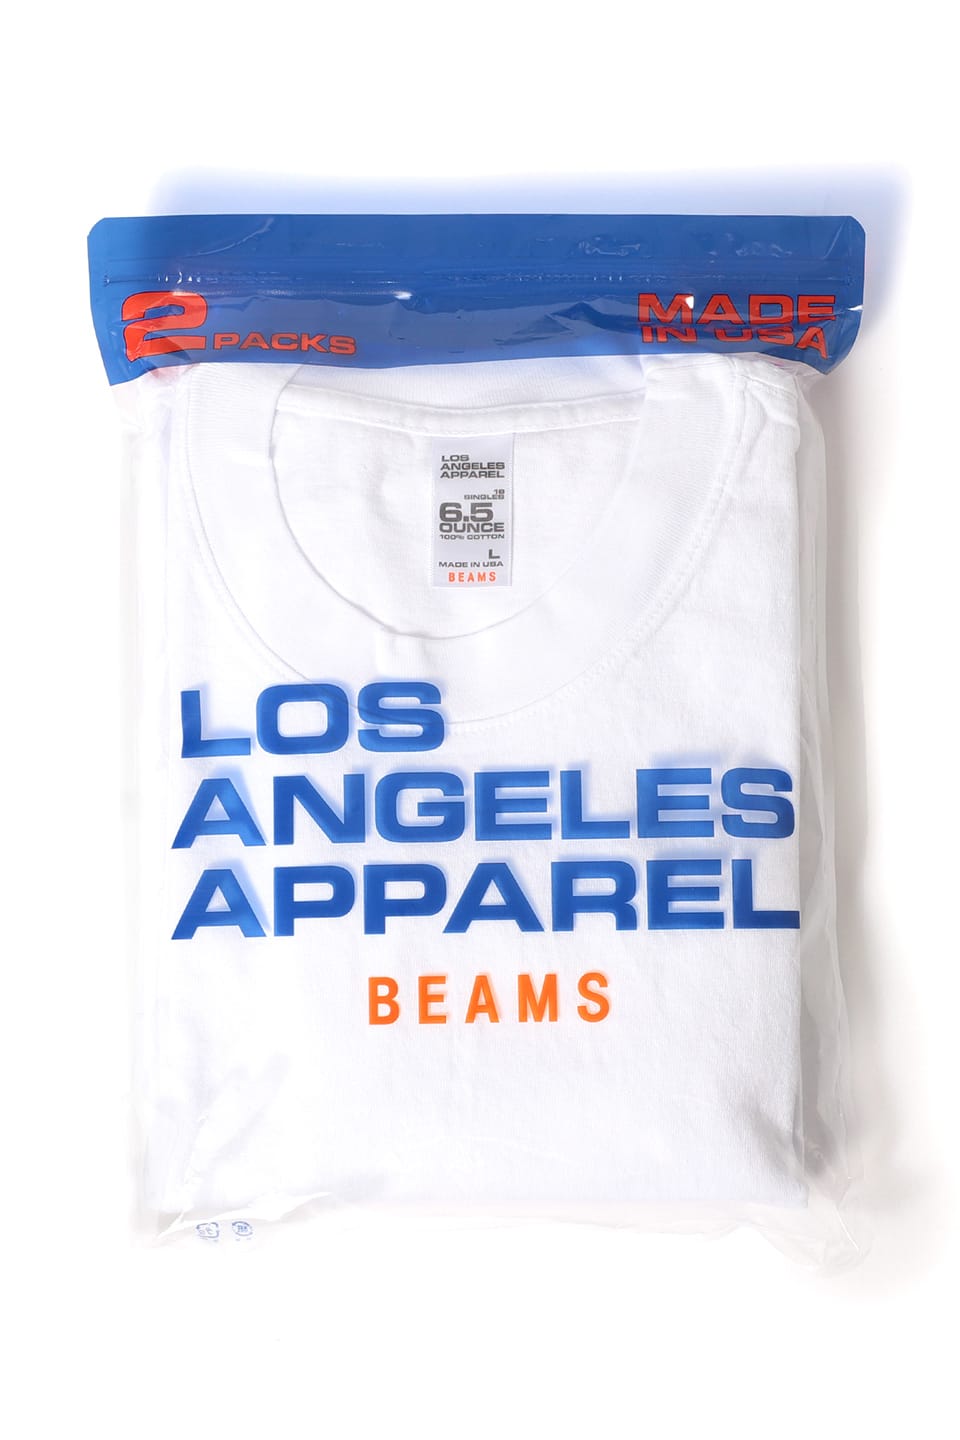 ビームス x ロサンゼルスアパレルの2枚組み別注パックTシャツが